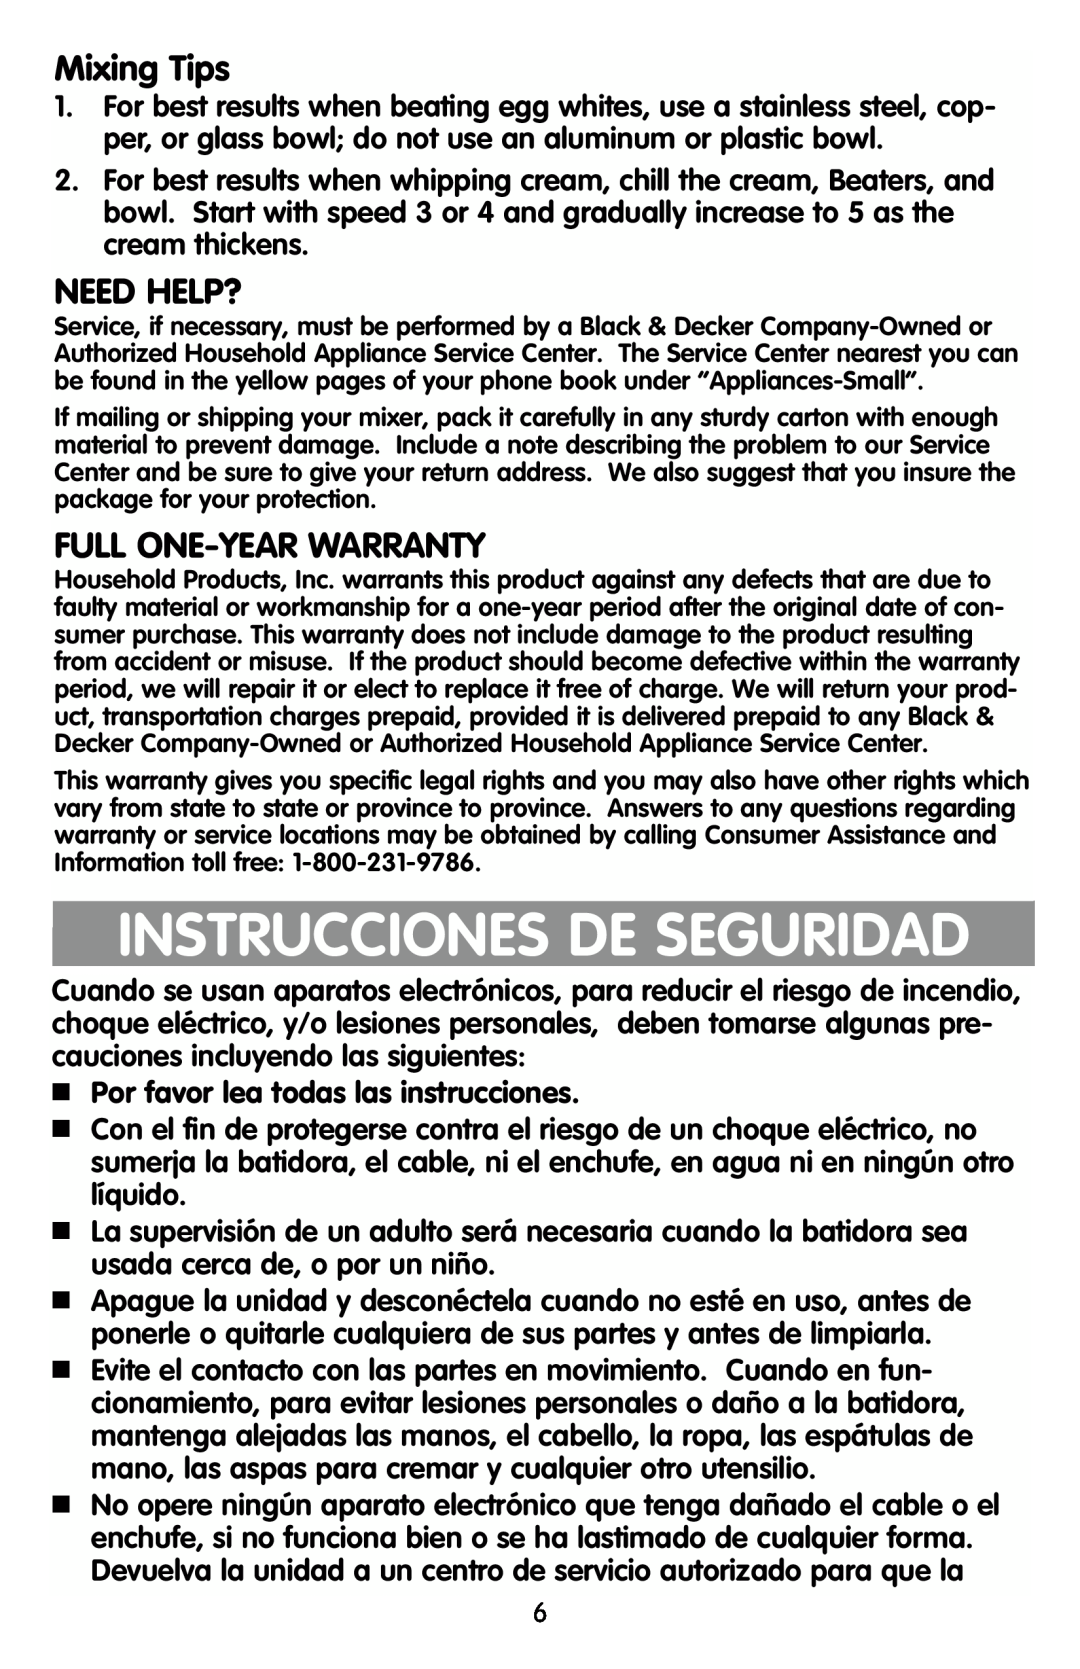 Black & Decker EHM90, EHM80 manual Instrucciones De Seguridad, Mixing Tips, Need Help?, Full One-Year Warranty 